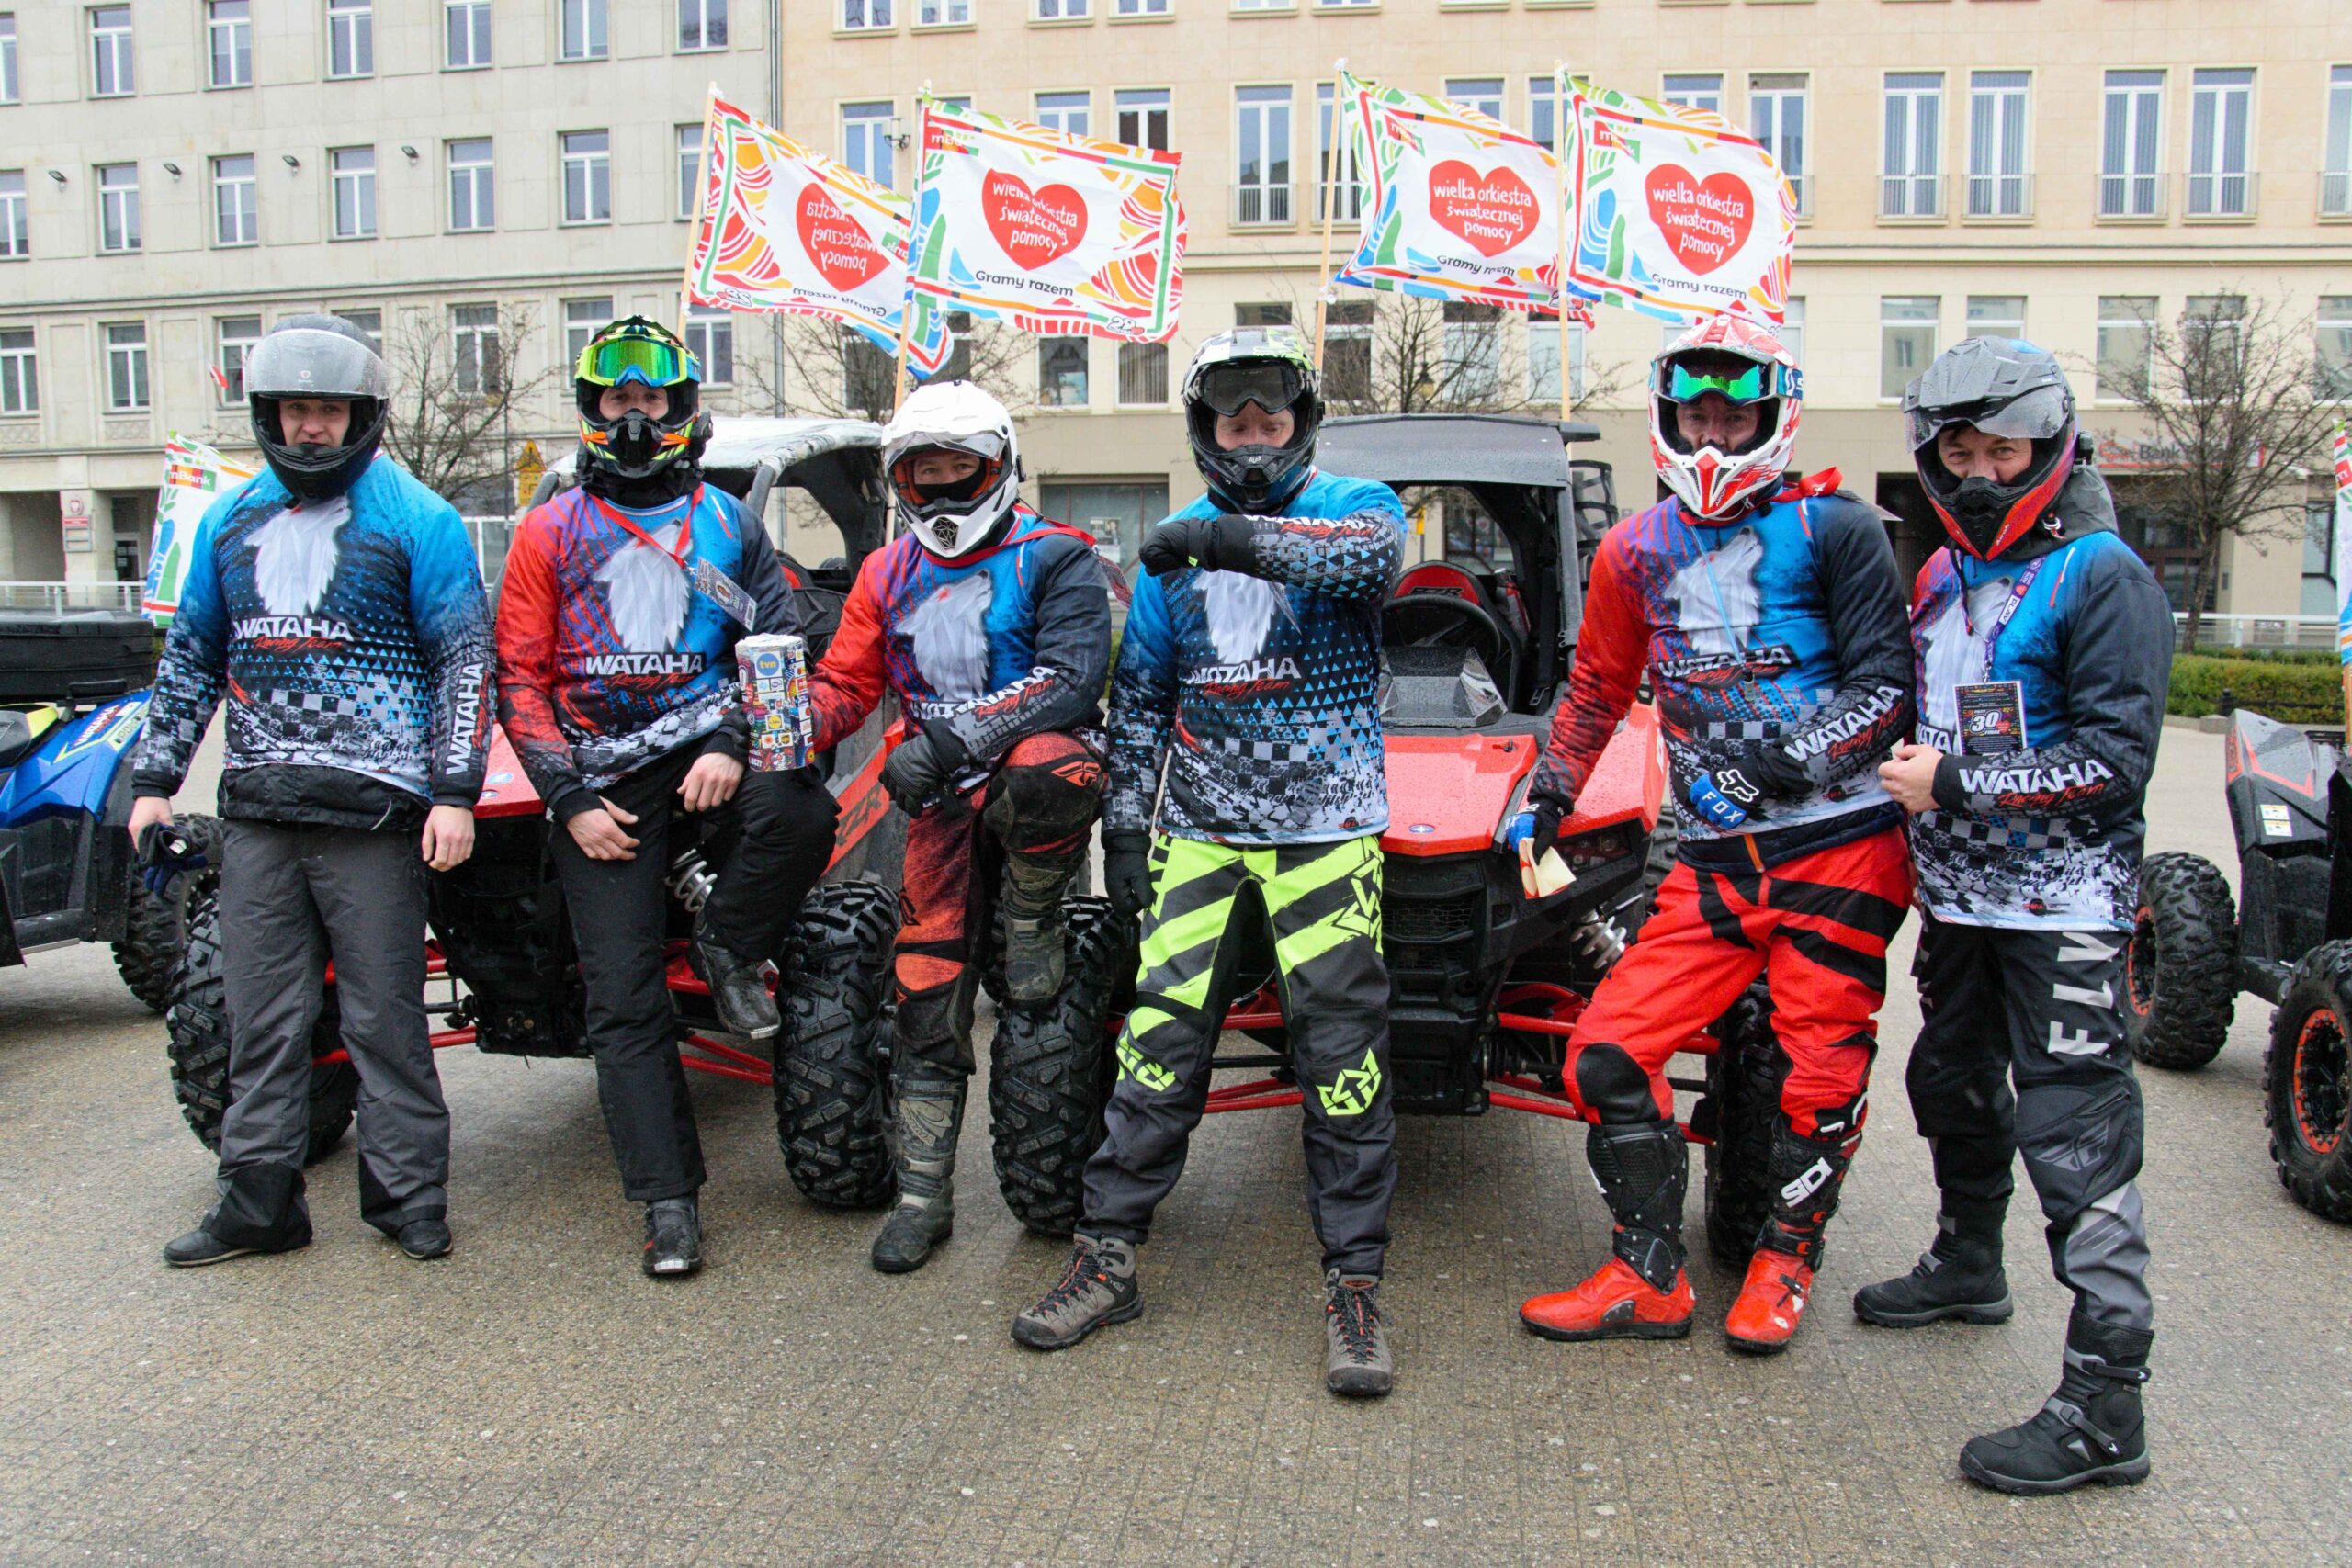 Grupa Wataha Racing Team przejechała przez Poznań kwestując na rzecz WOŚP